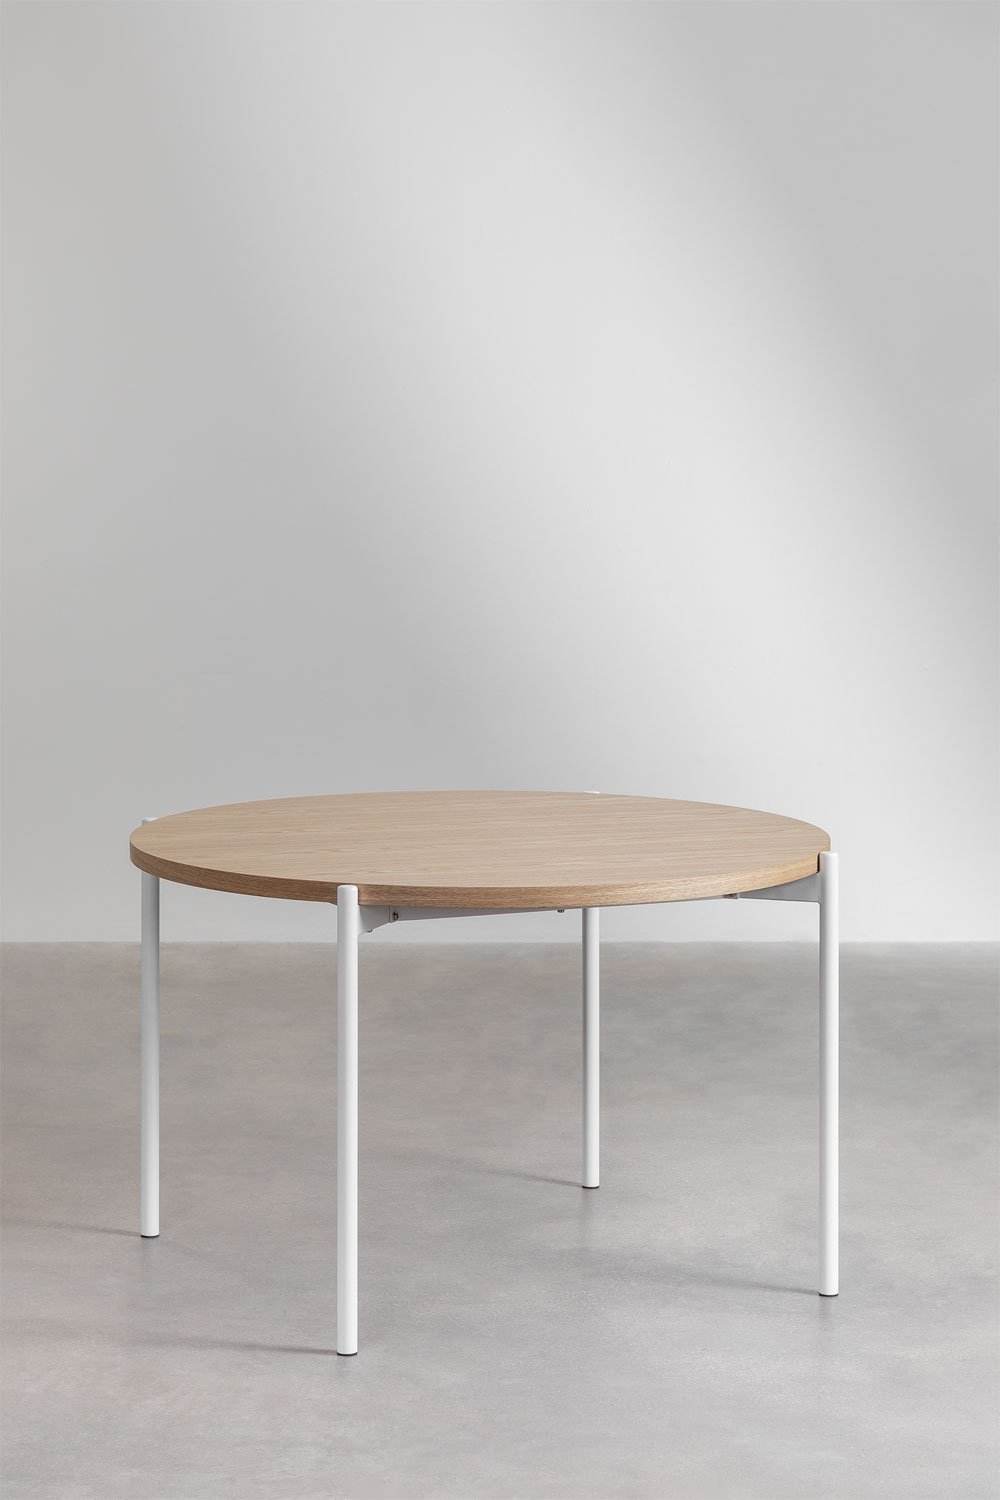 Tavolo da pranzo rotondo Galite in legno e metallo (Ø120 cm), immagine della galleria 2